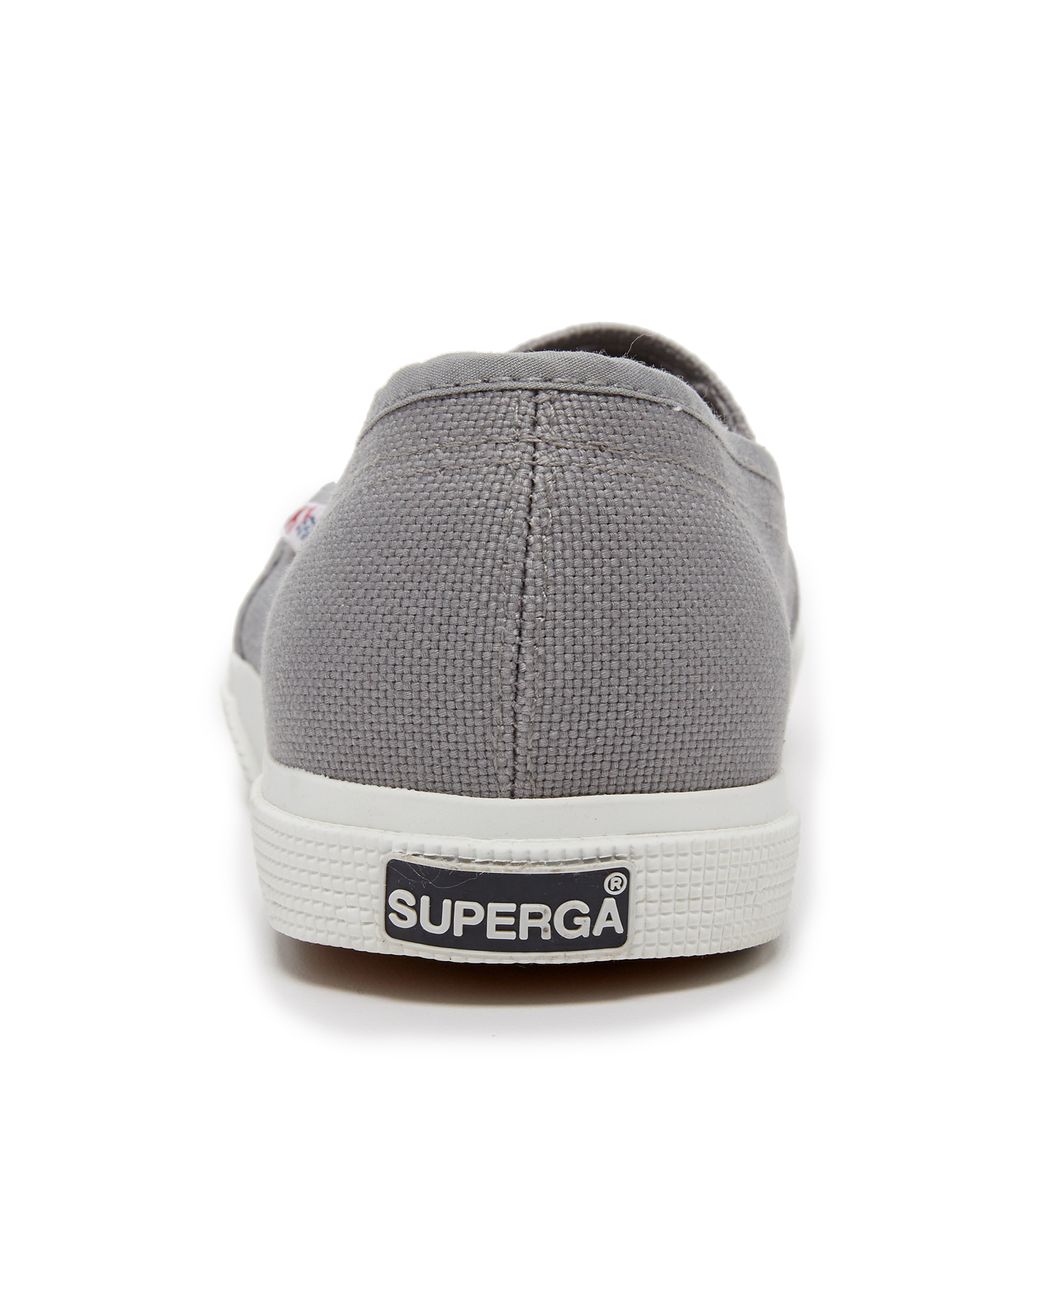 Superga Cotu Slip On Sneakers in Gray | Lyst